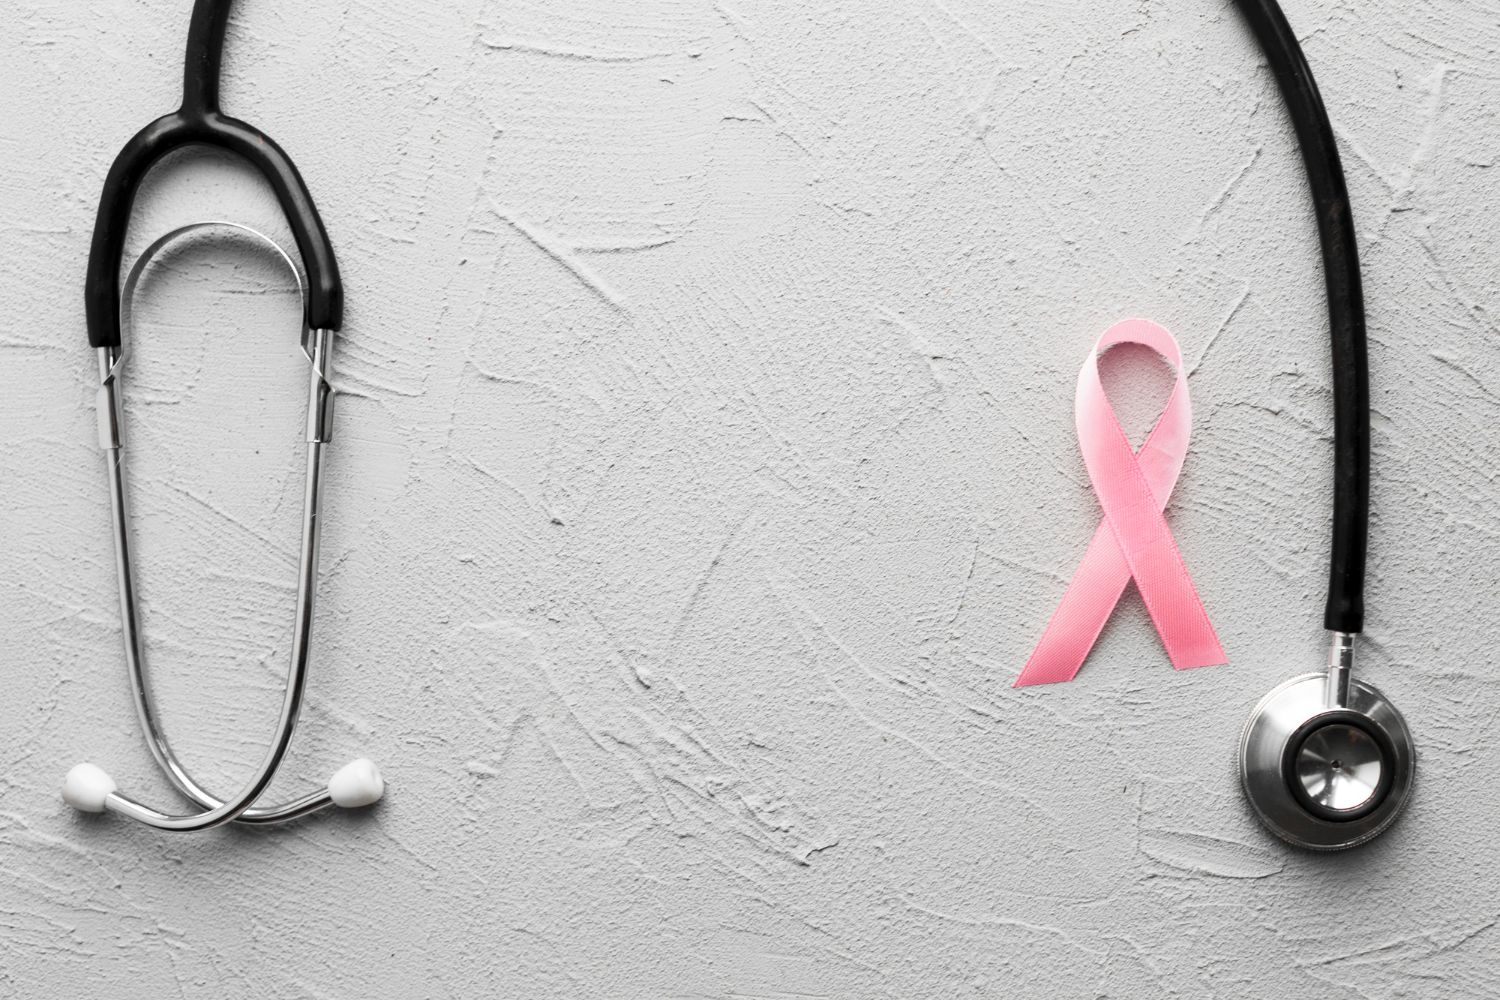 Pozwala przewidzieć nawrót raka piersi nawet 41 miesięcy przed potwierdzeniem diagnozy w badaniach